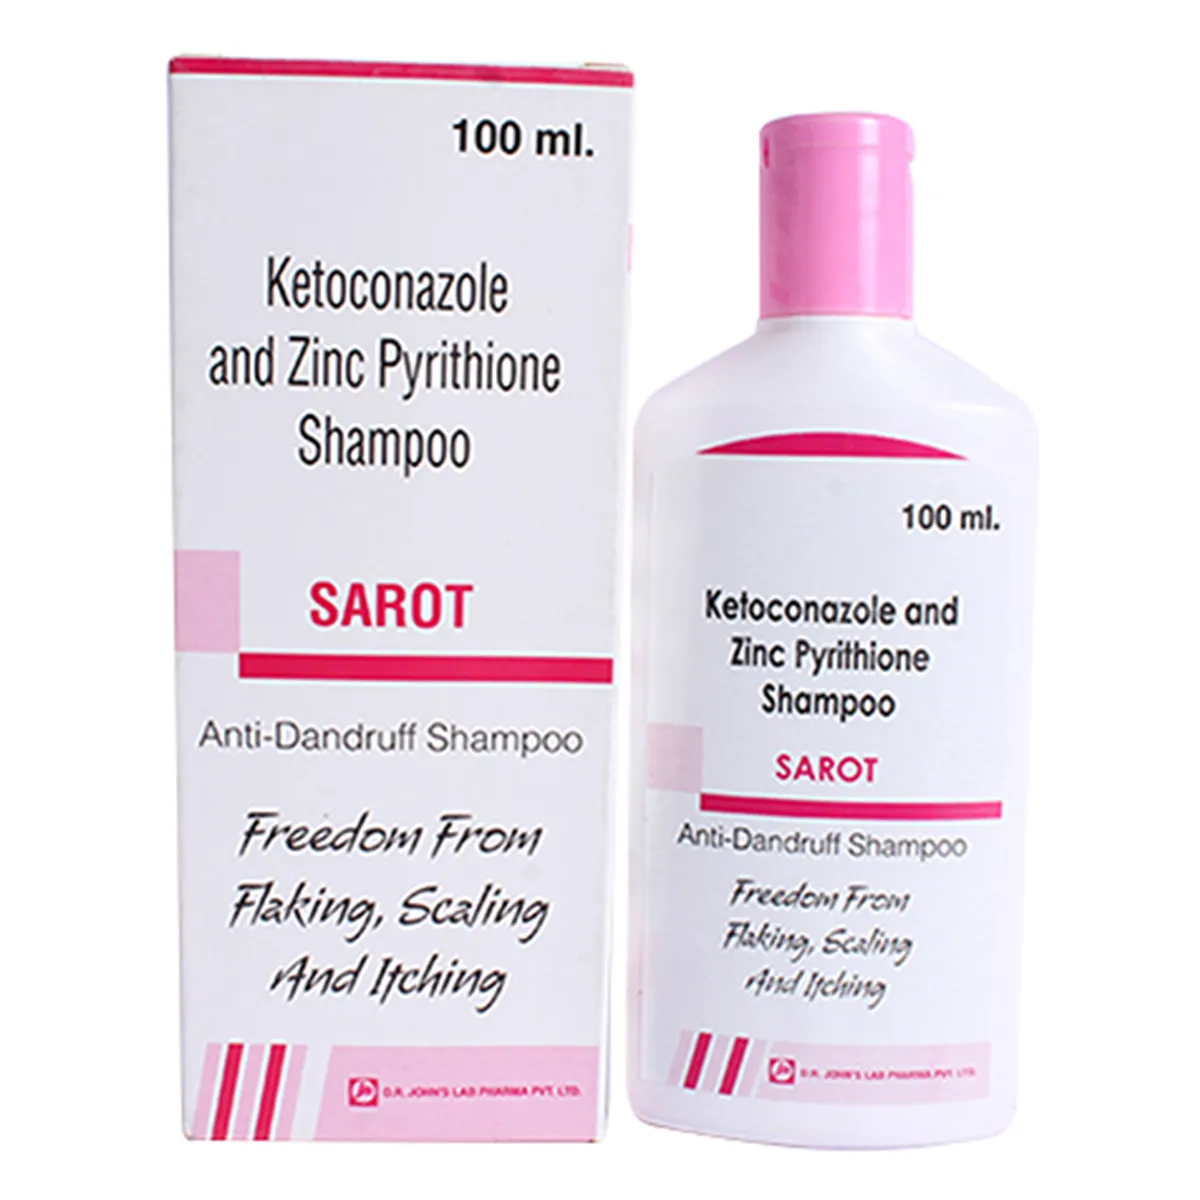 Sarot Shampoo